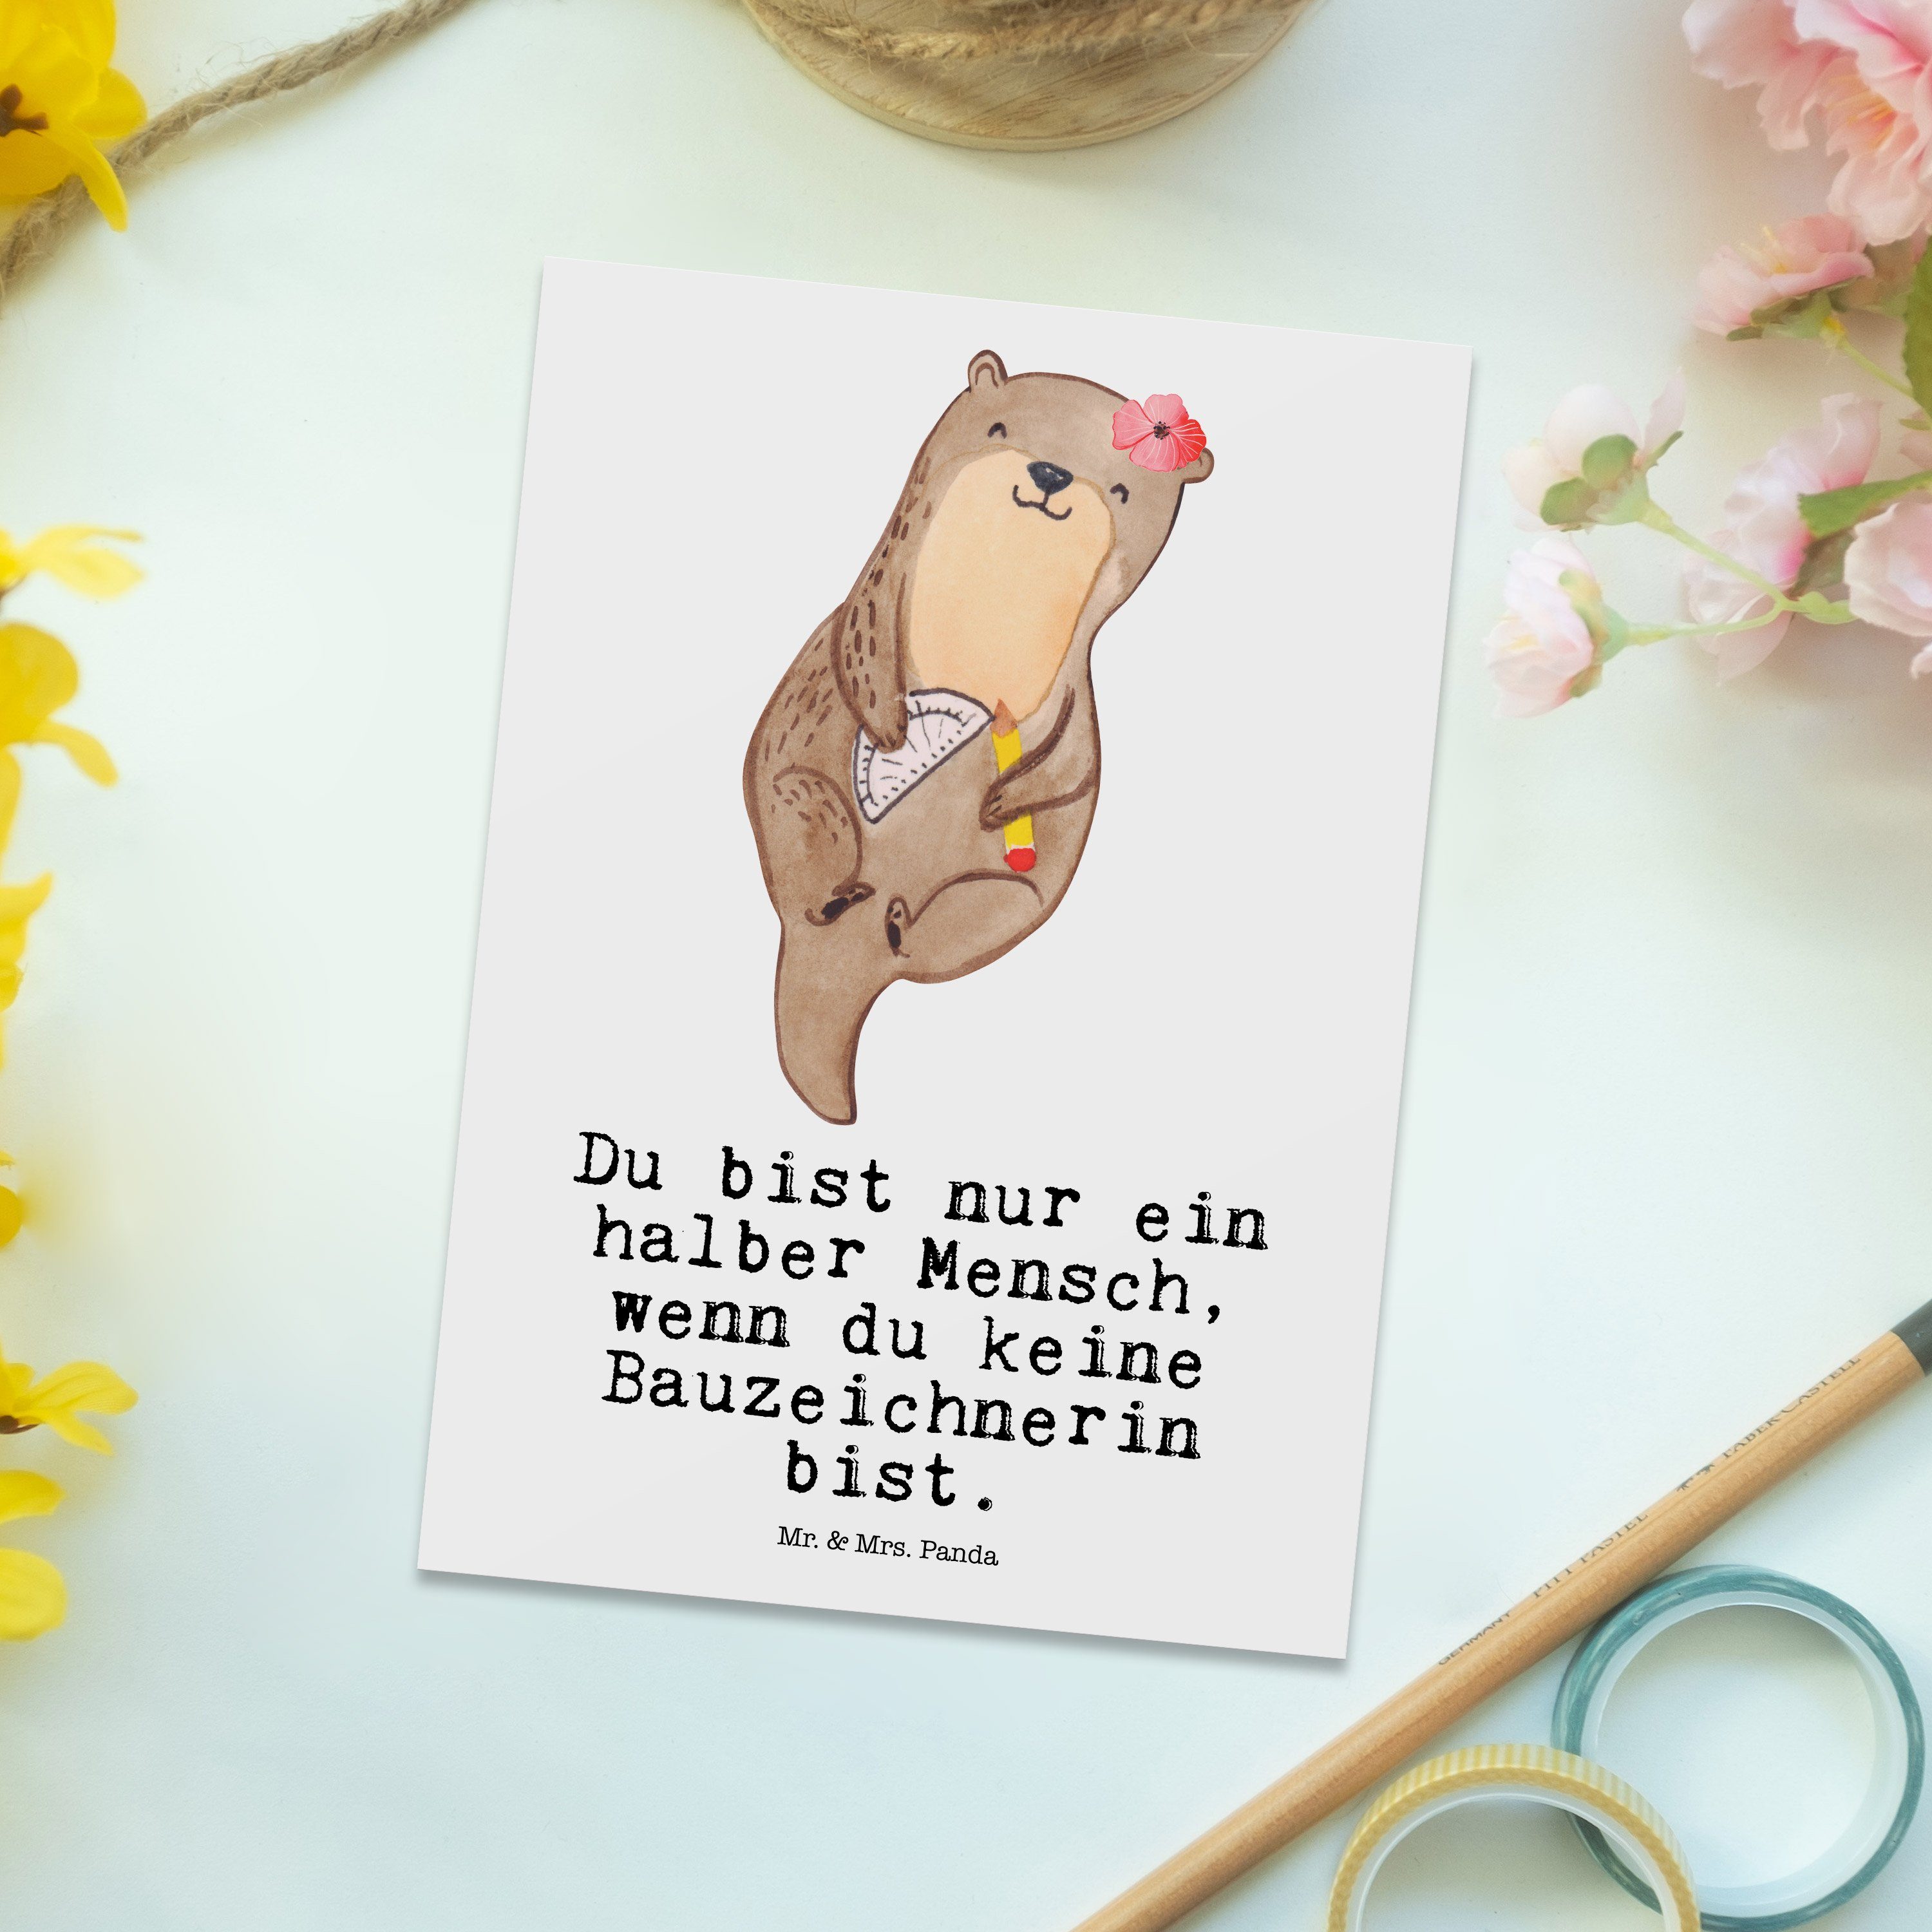 Mr. & Mrs. Panda Postkarte Bauzeichnerin mit Herz - Weiß - Geschenk, Abschied, Grußkarte, Ausbil